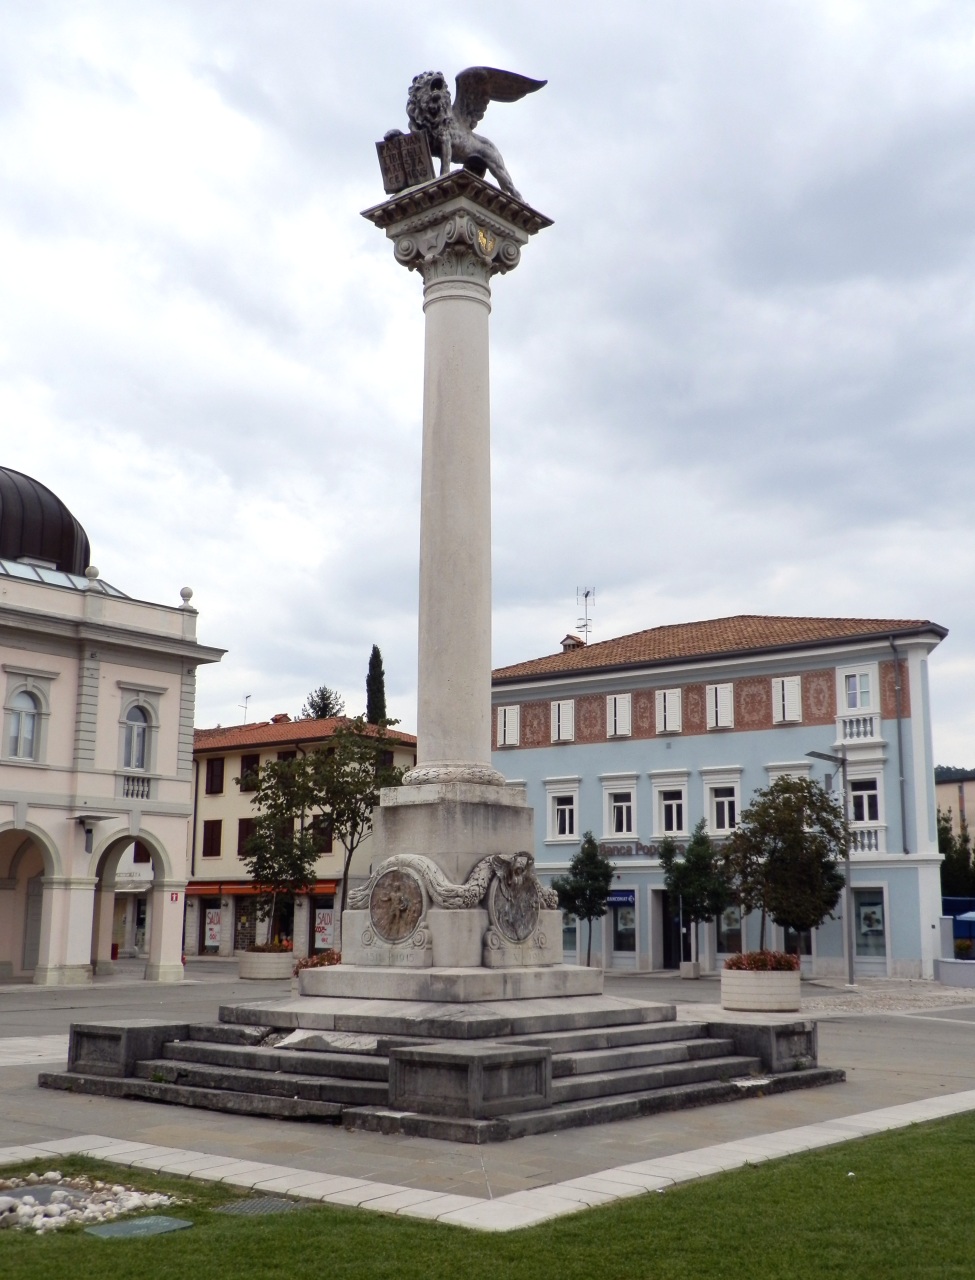 Monumento ai Caduti nella guerra di redenzione - Gradisca d'Isonzo , Gorizia - Opera Giovanni Battista Novelli - 1924 